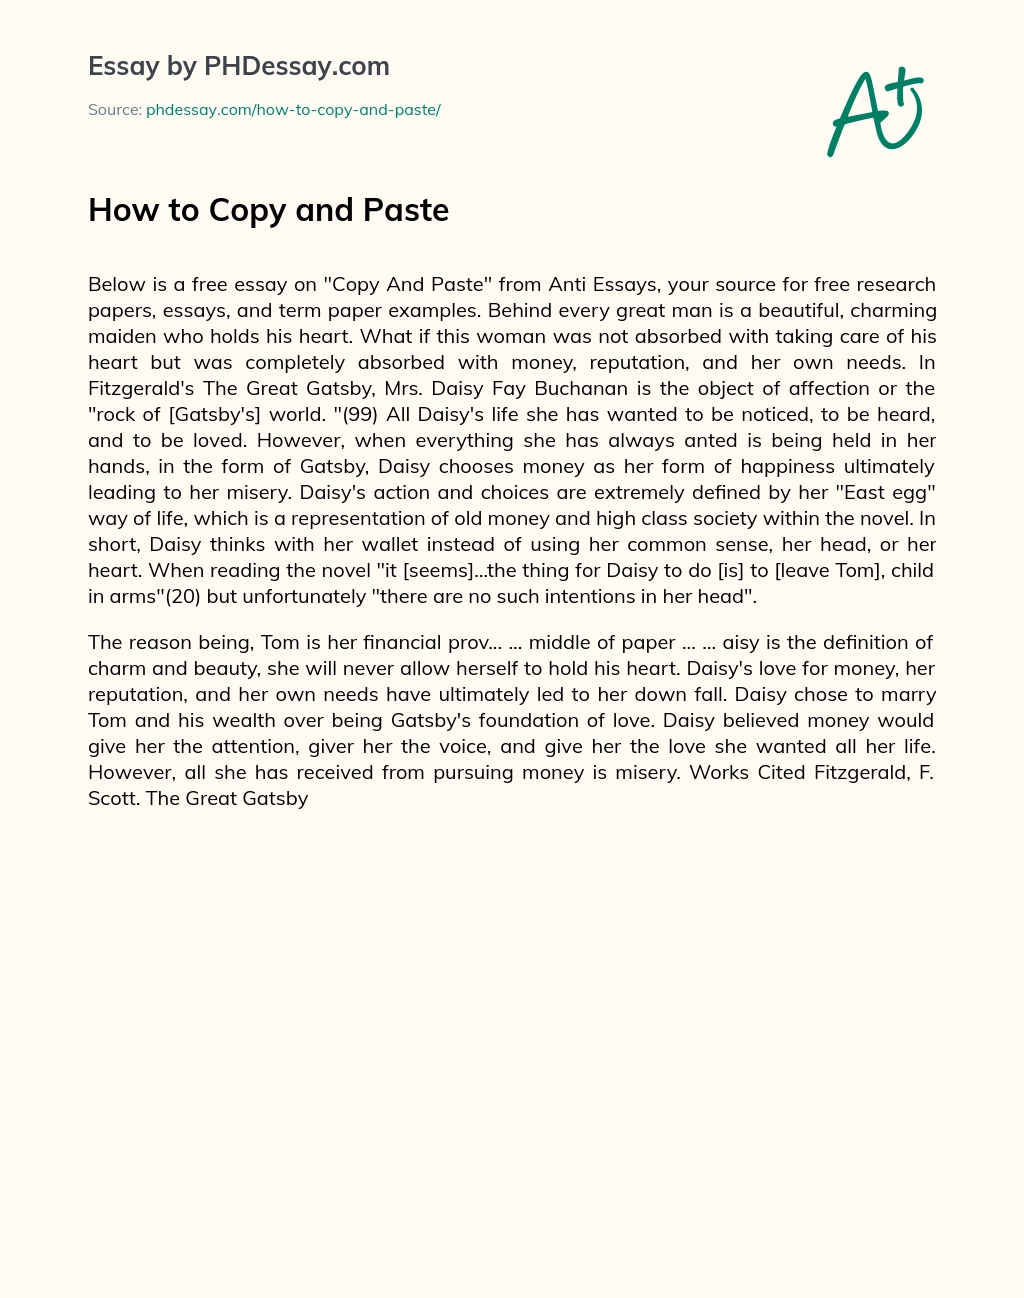 How To Copy And Paste Phdessay Com